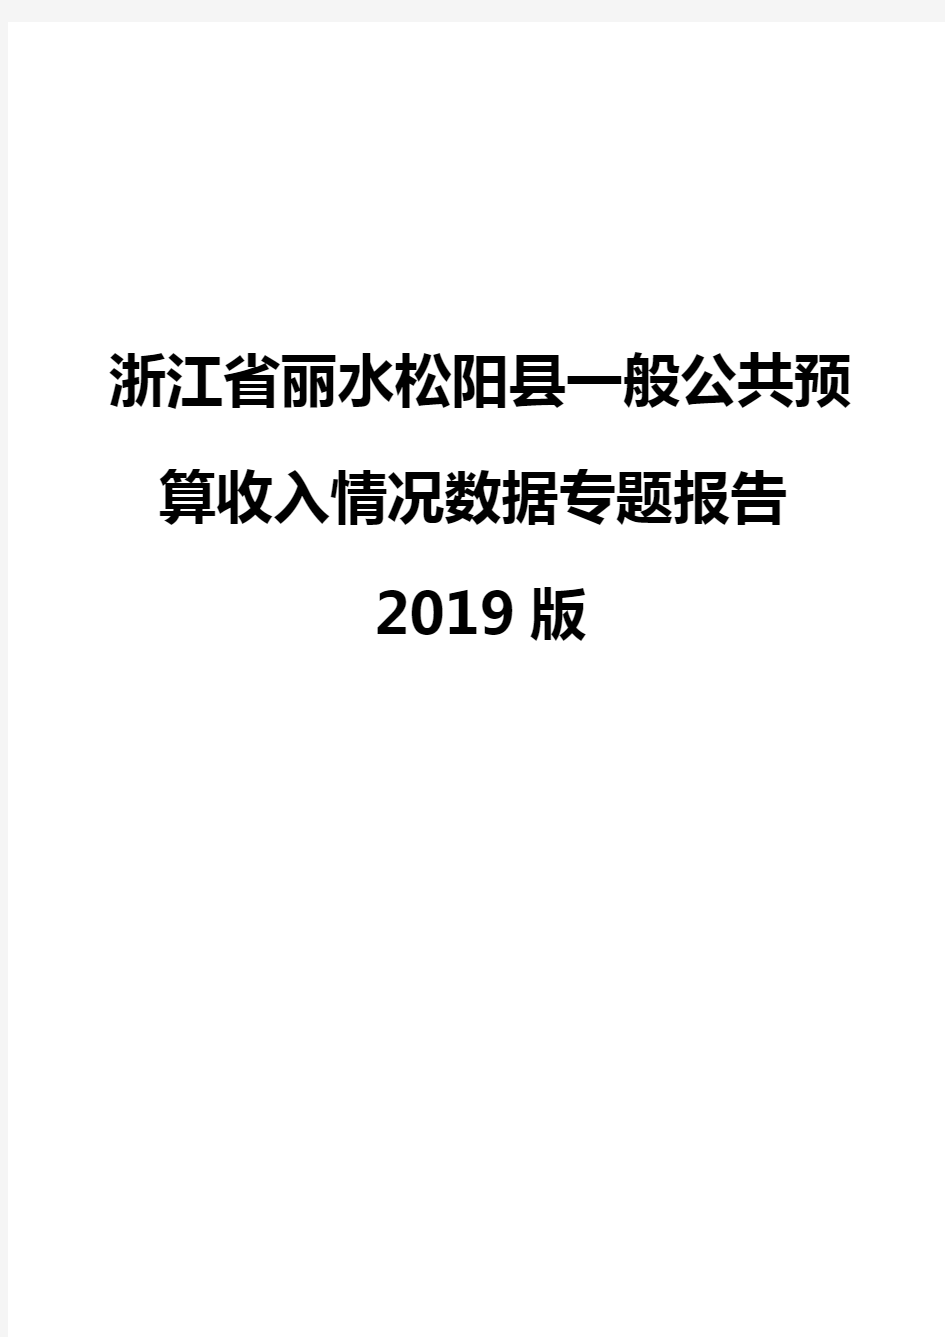 浙江省丽水松阳县一般公共预算收入情况数据专题报告2019版